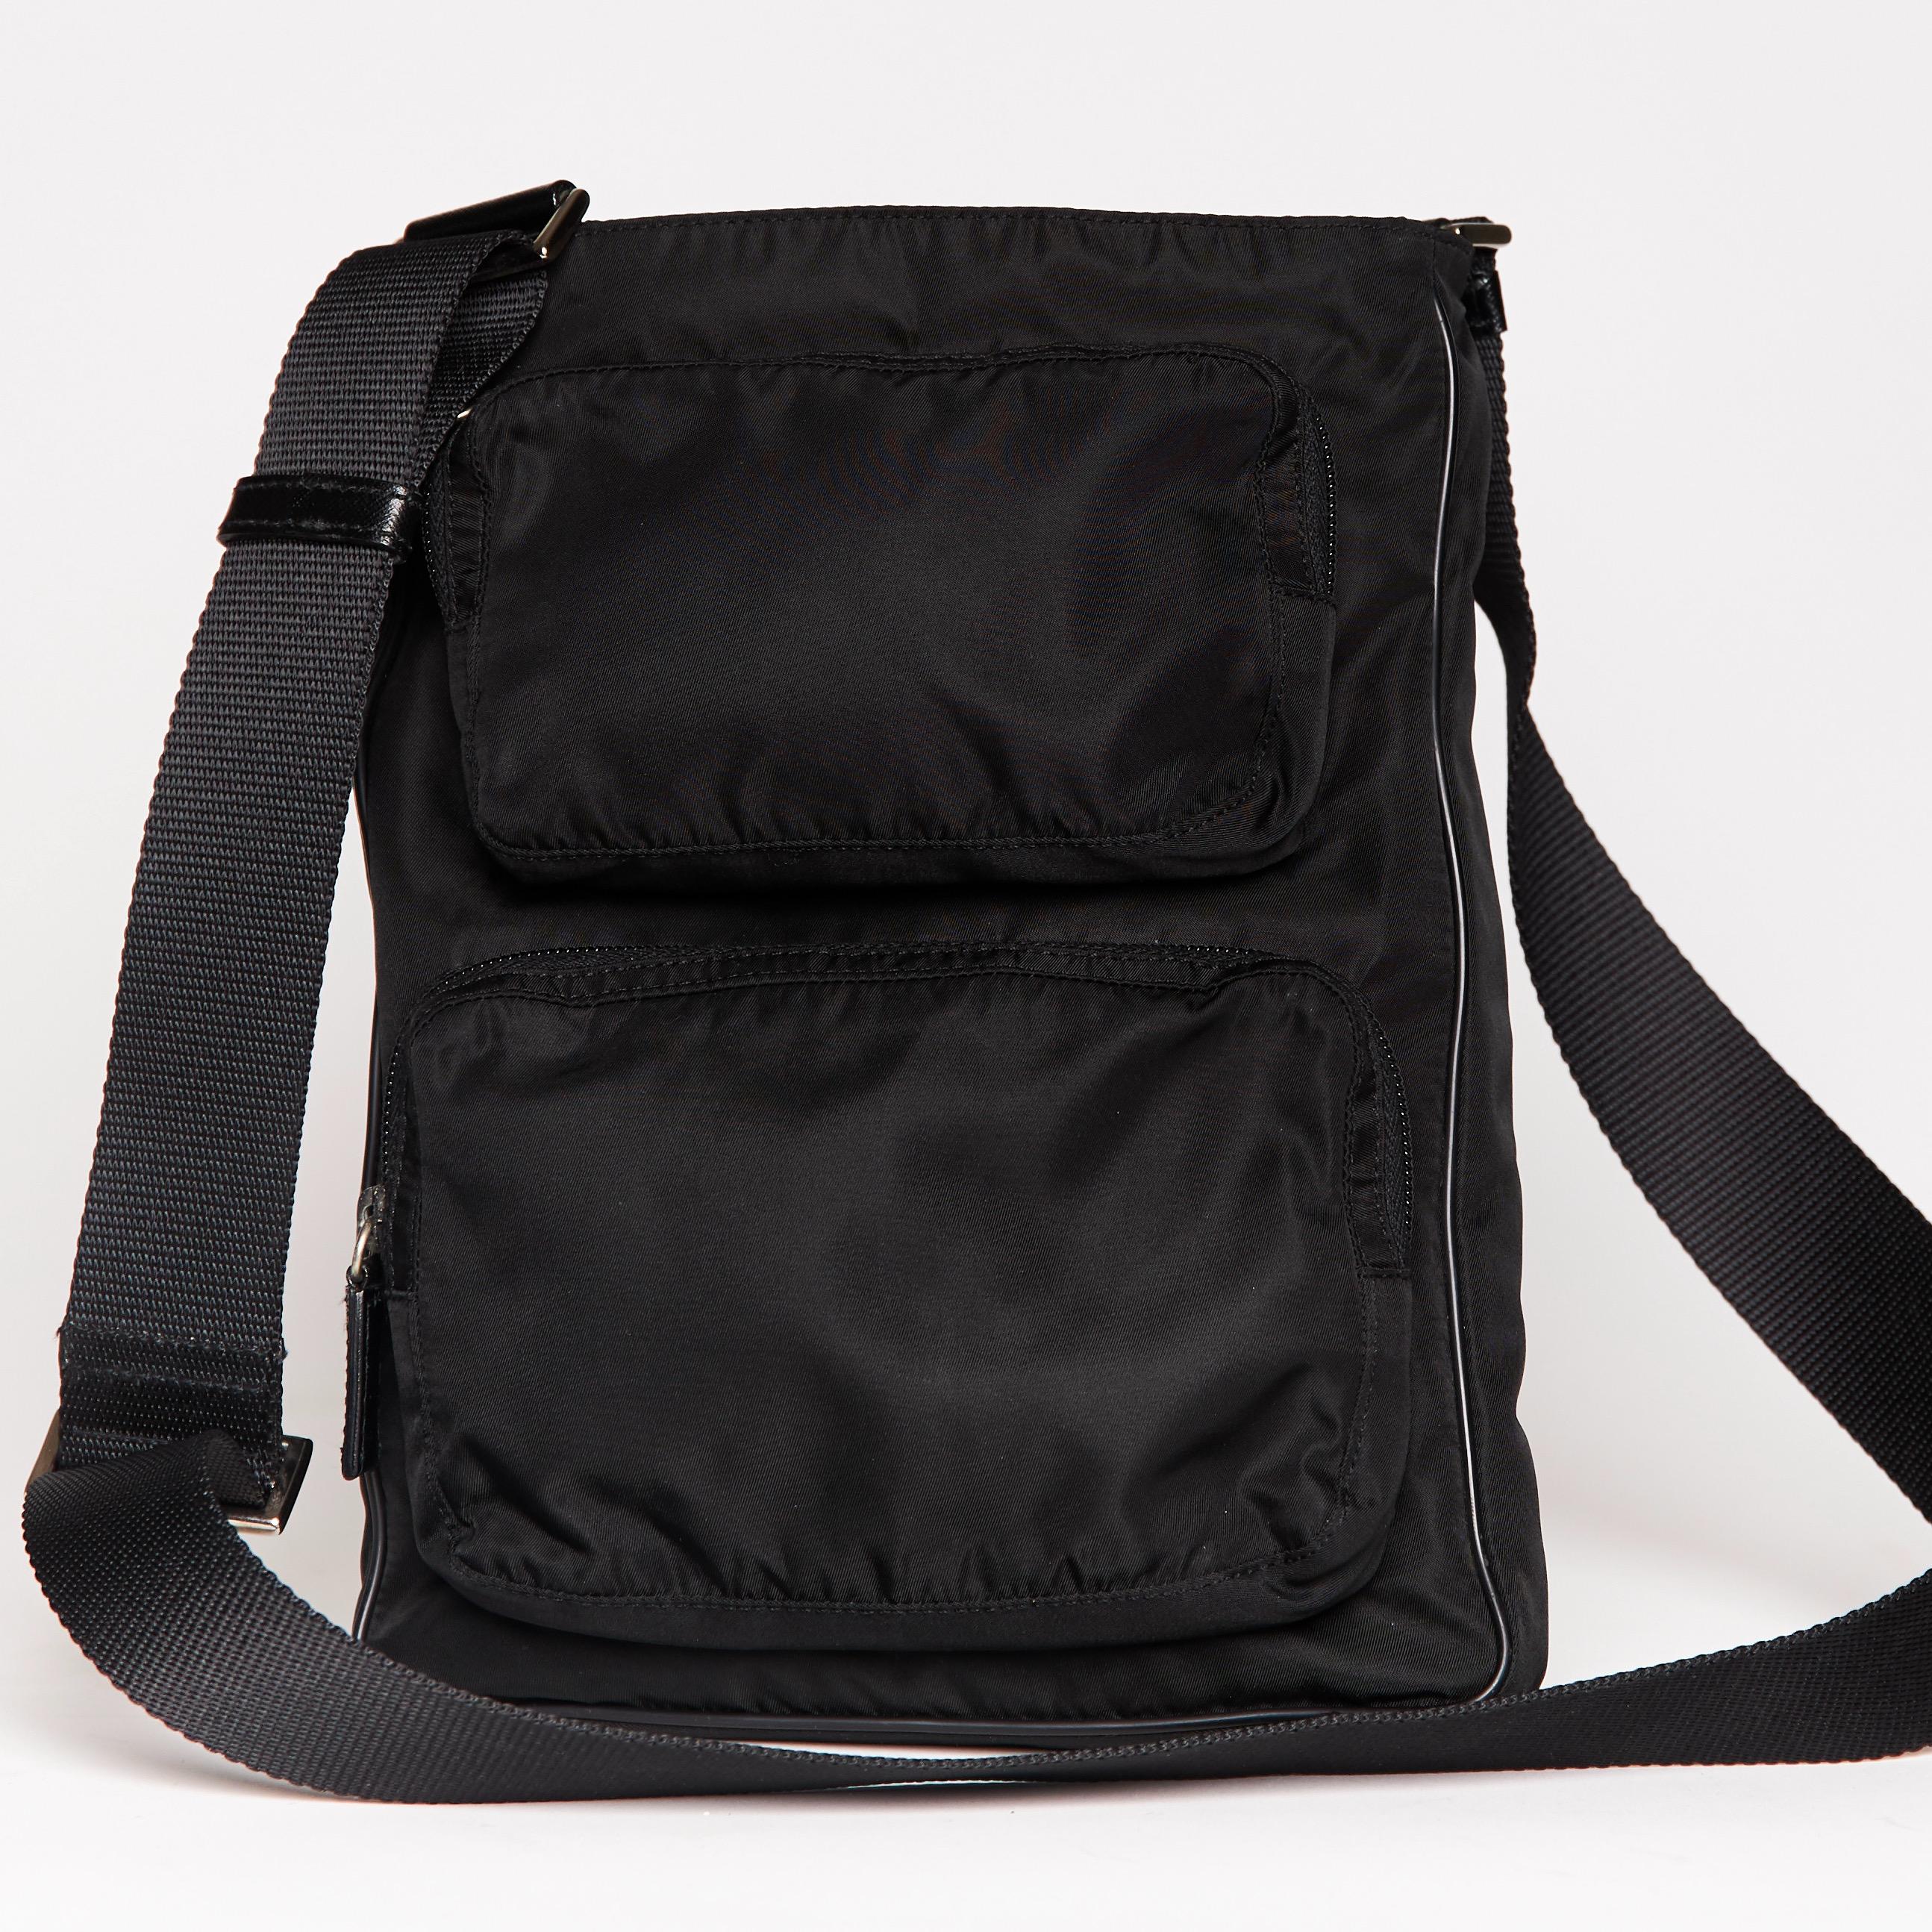 Diese Prada Tasche ist aus schwarzem Nylon mit Lederbesatz und -abschlüssen. Die Tasche hat einen langen schwarzen Schulterriemen aus gewebtem Stoff, zwei Reißverschlusstaschen auf der Vorderseite, einen Reißverschluss an der Oberseite und ein